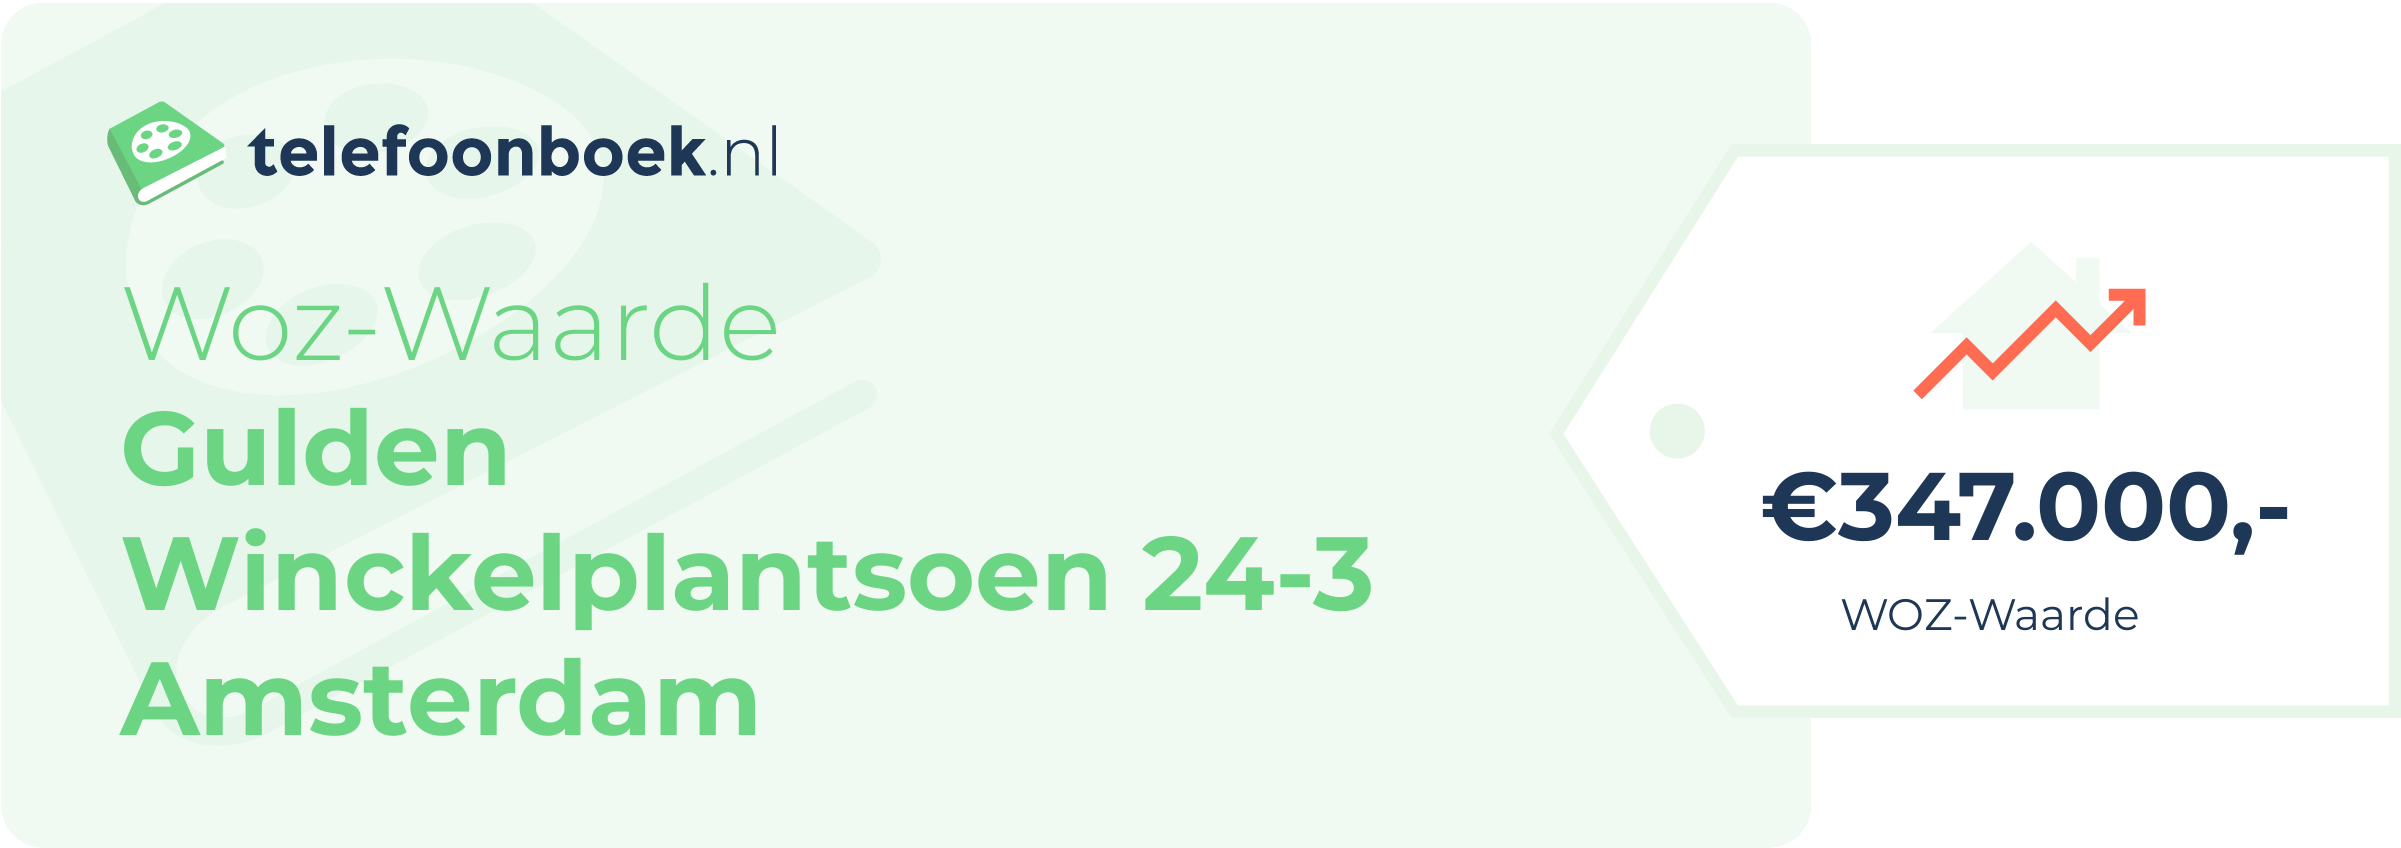 WOZ-waarde Gulden Winckelplantsoen 24-3 Amsterdam